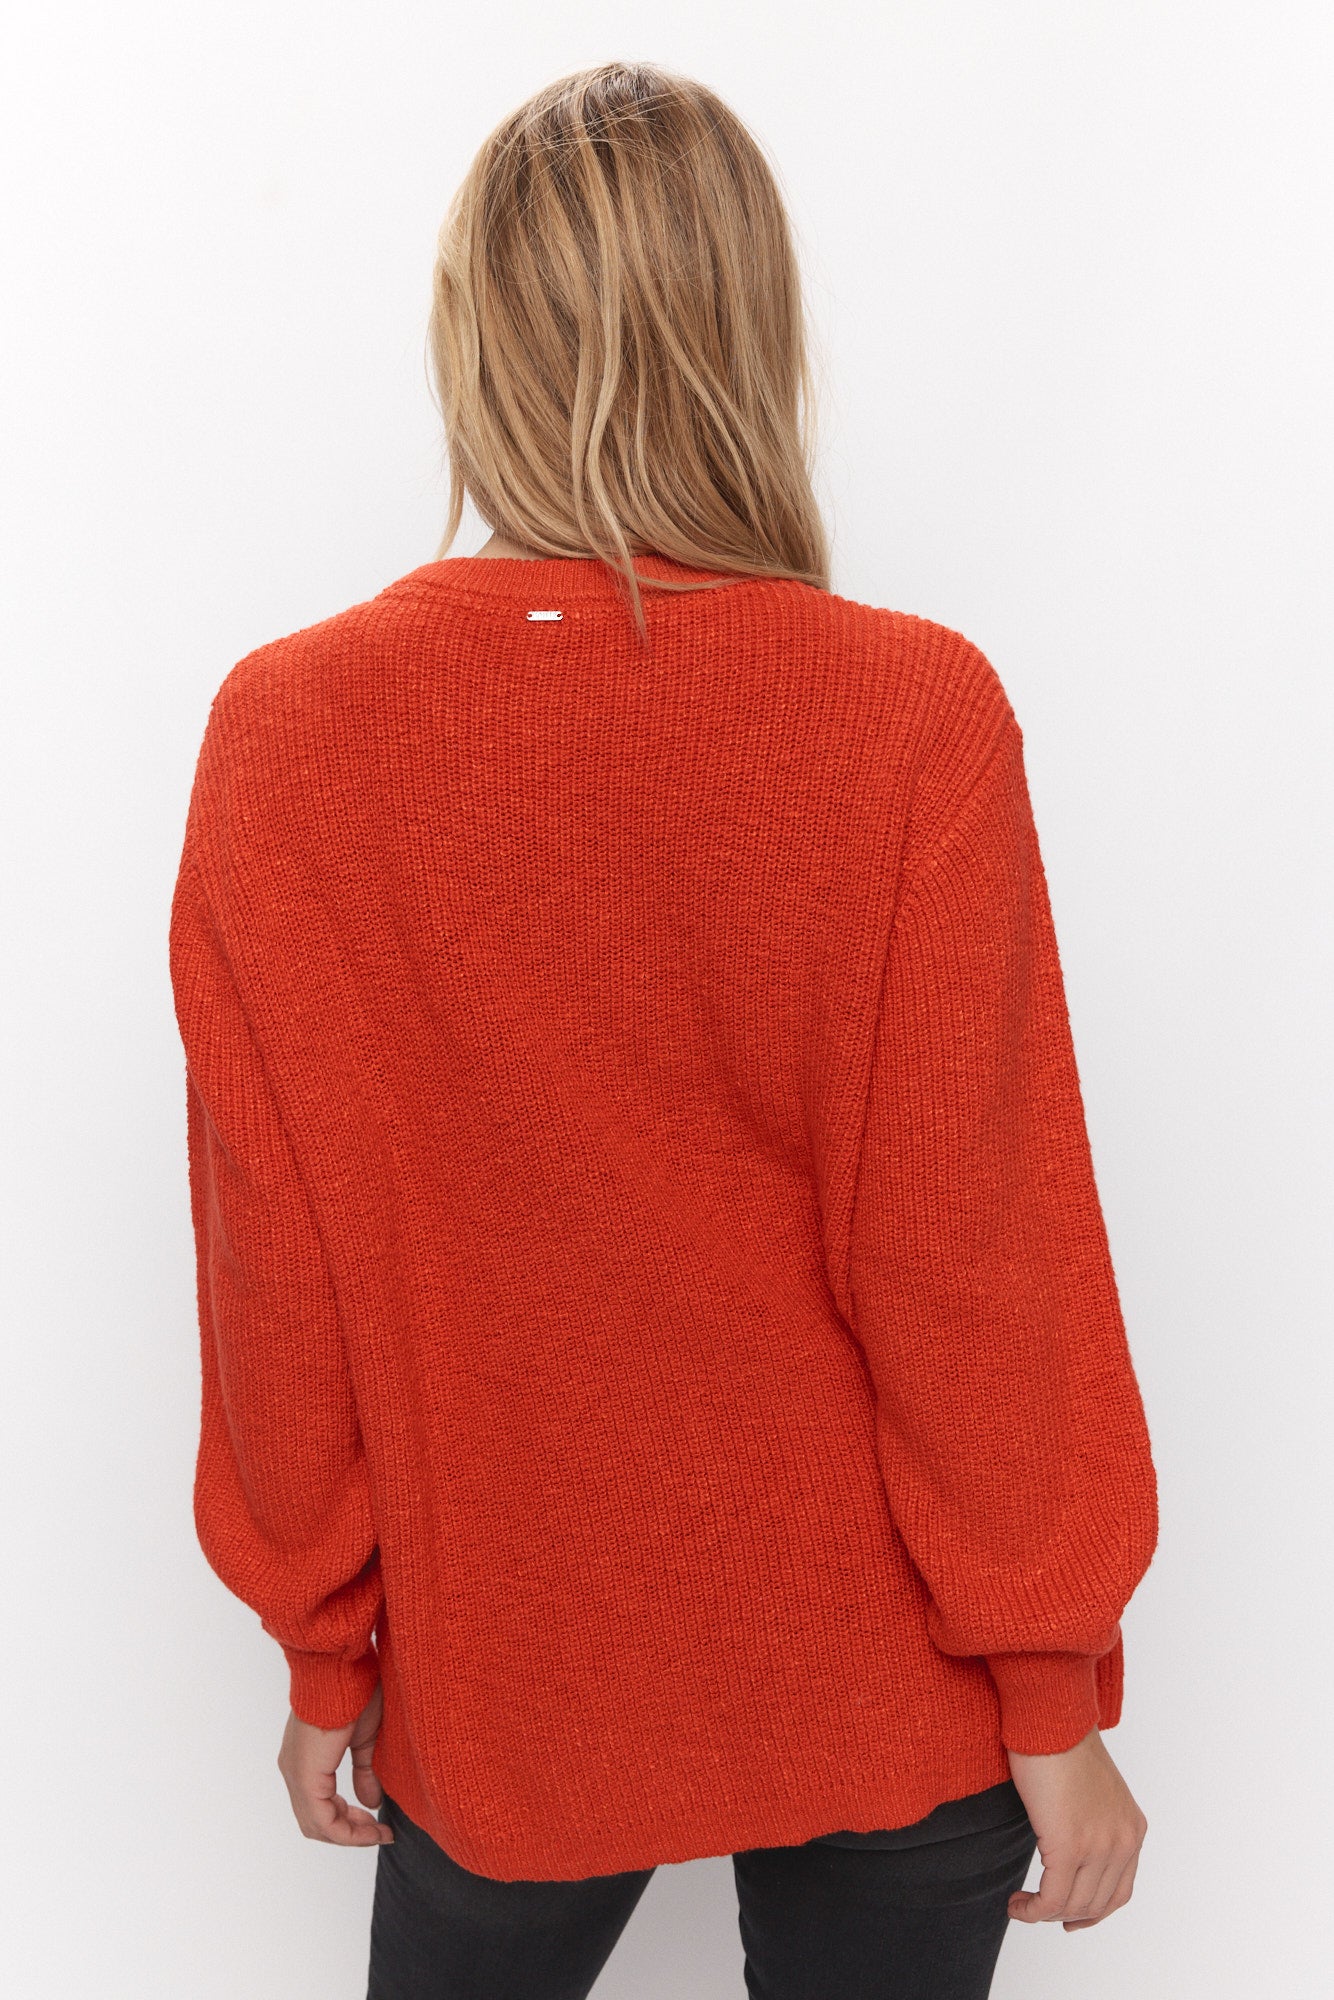 Red knit sweater for women, Melianne